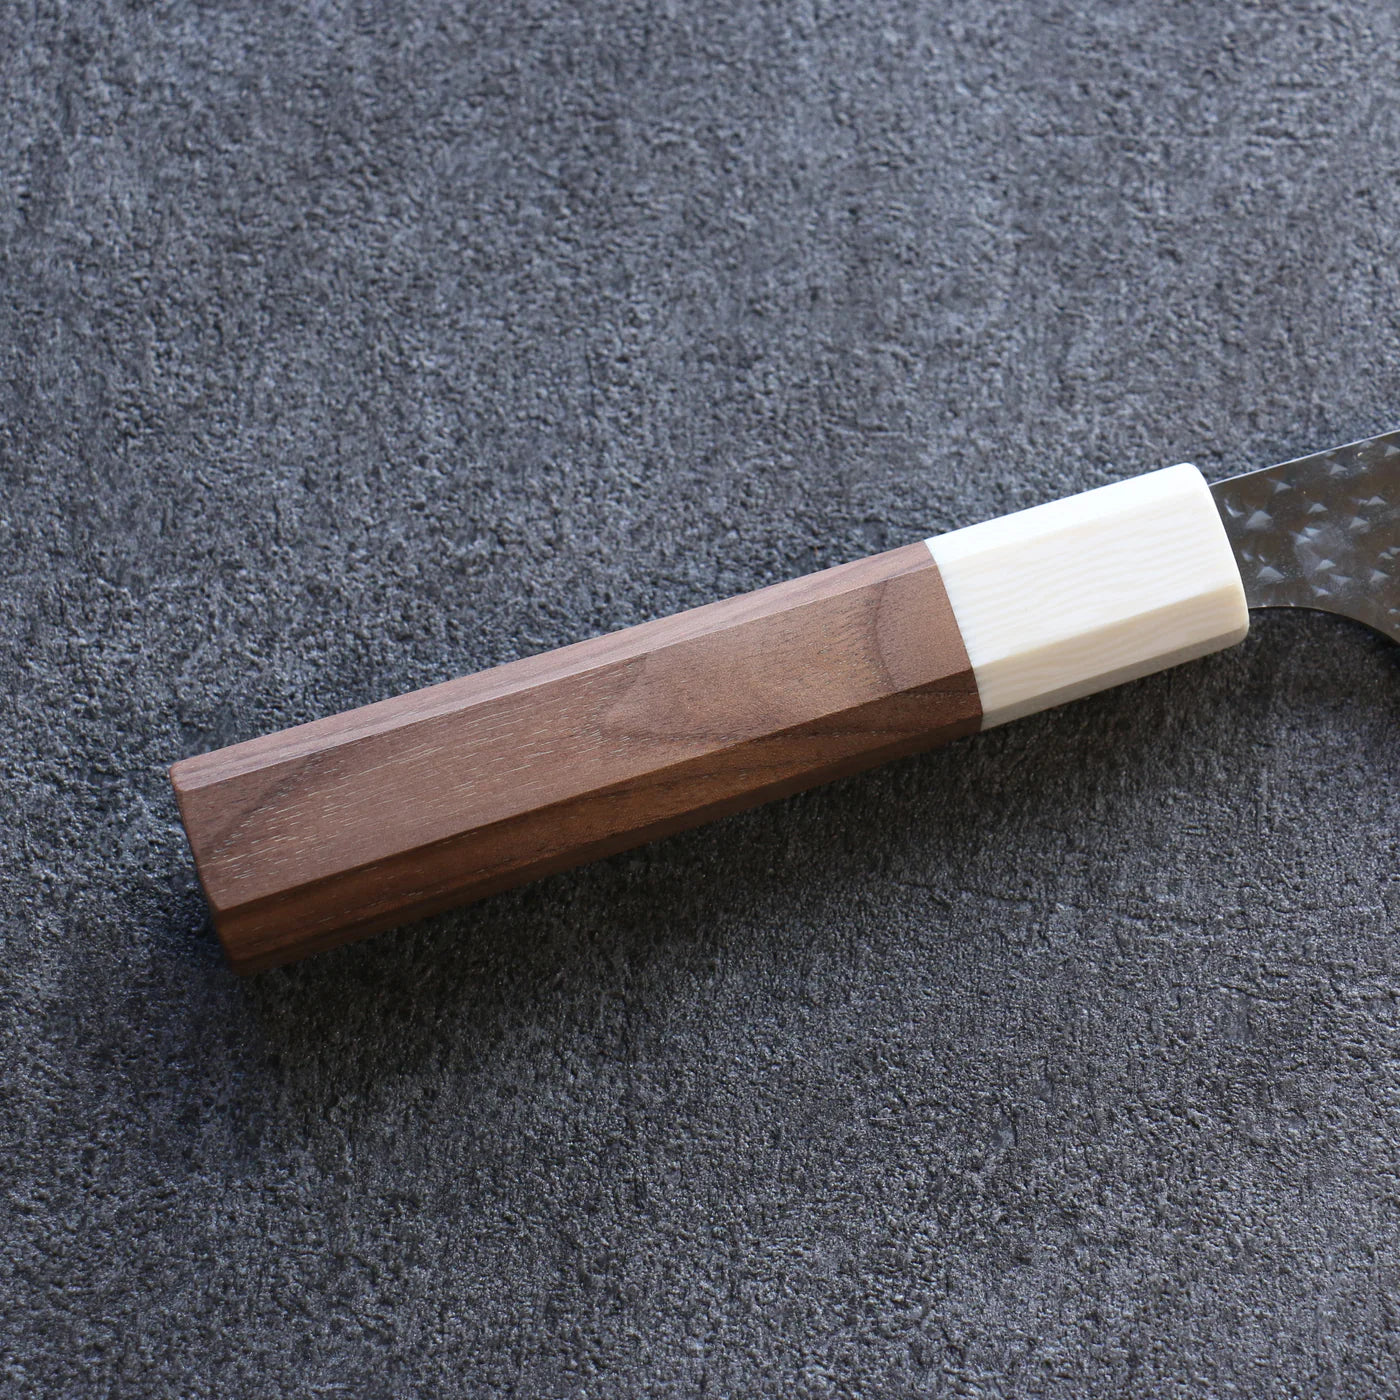 Hochwertiges japanisches Messer – Yu Kurosaki Senko Ei-Serie, Susjihiki-Spezialmesser mit Rippen, R2/SG2-Stahl, Griff aus Walnussholz, 240 mm